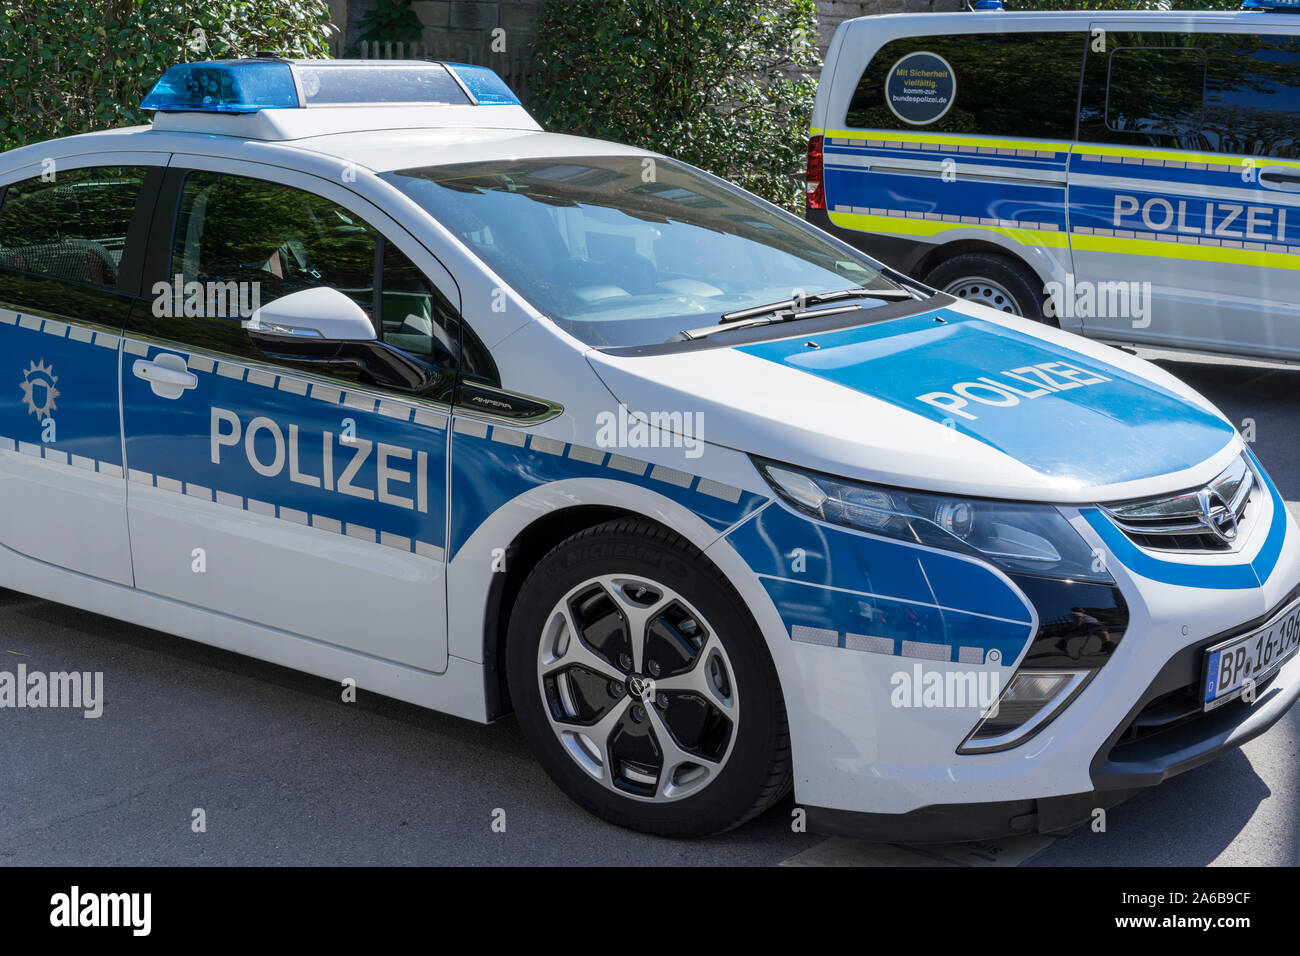 Ludwigsburg, Germany - 15 September 2019: German police car, patrol car, is standing in the street. Car brand Opel Ampera. Stock Photo